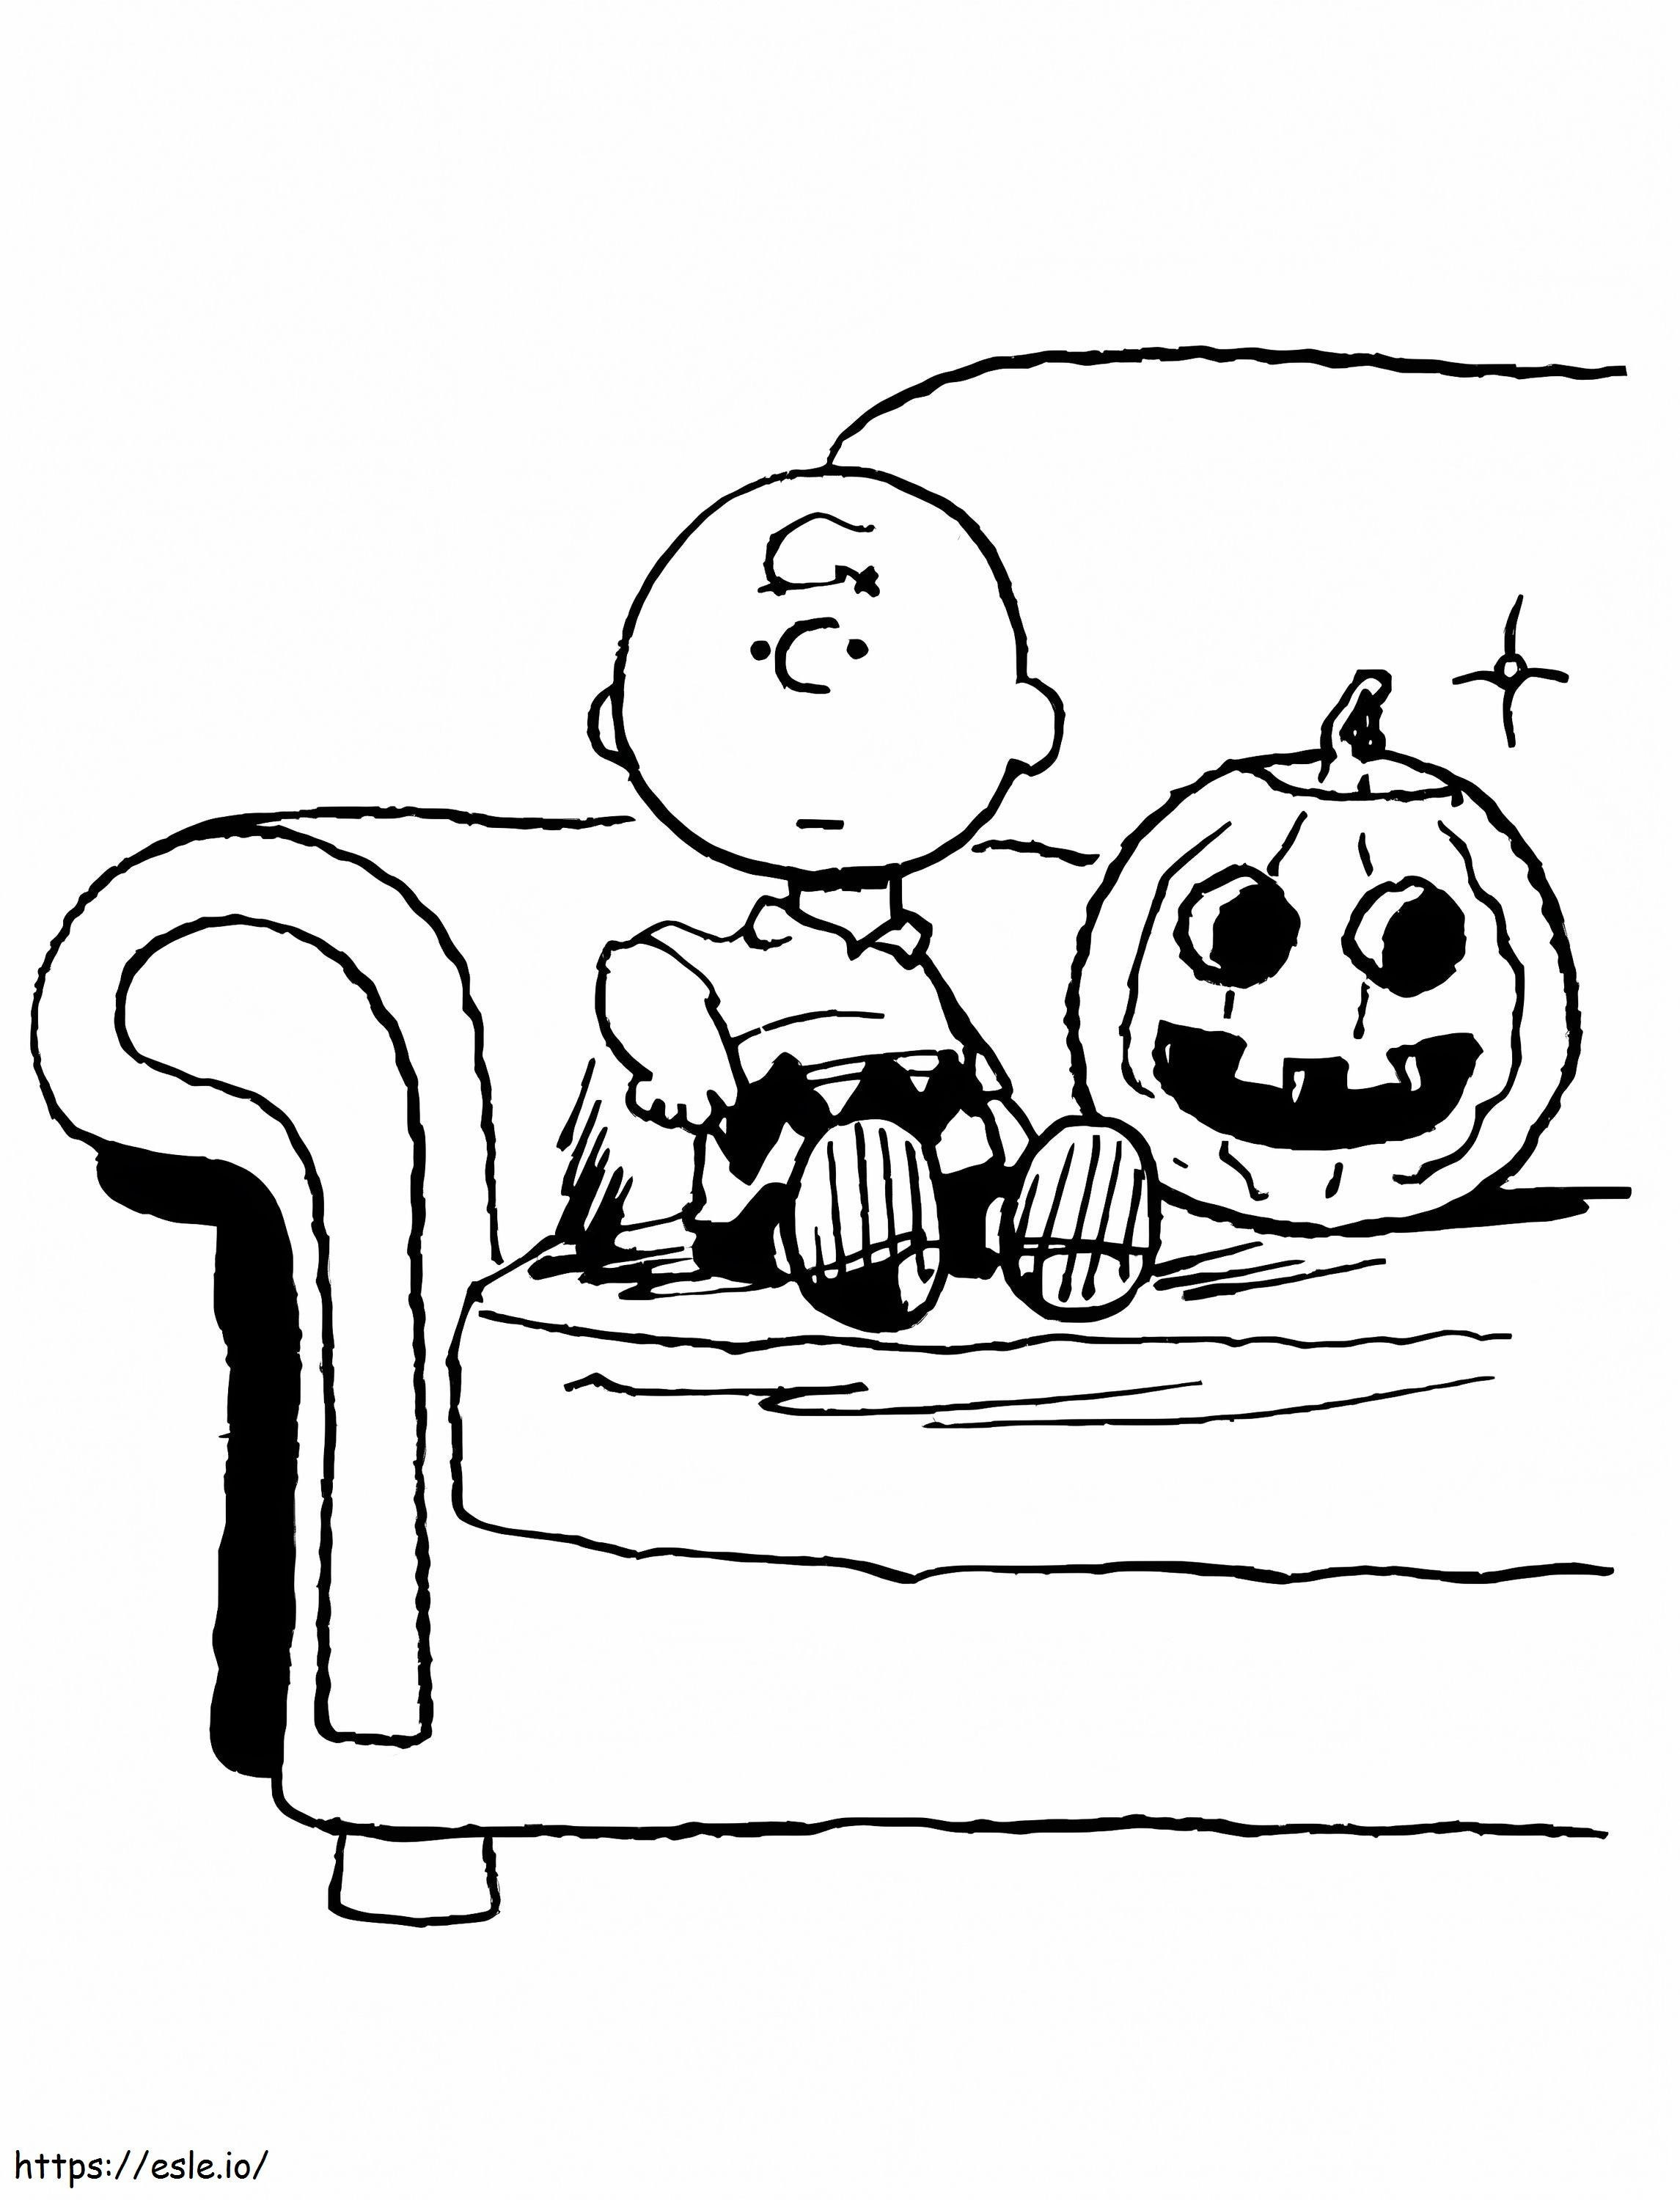 Charlie Brown-zitting en pompoen kleurplaat kleurplaat